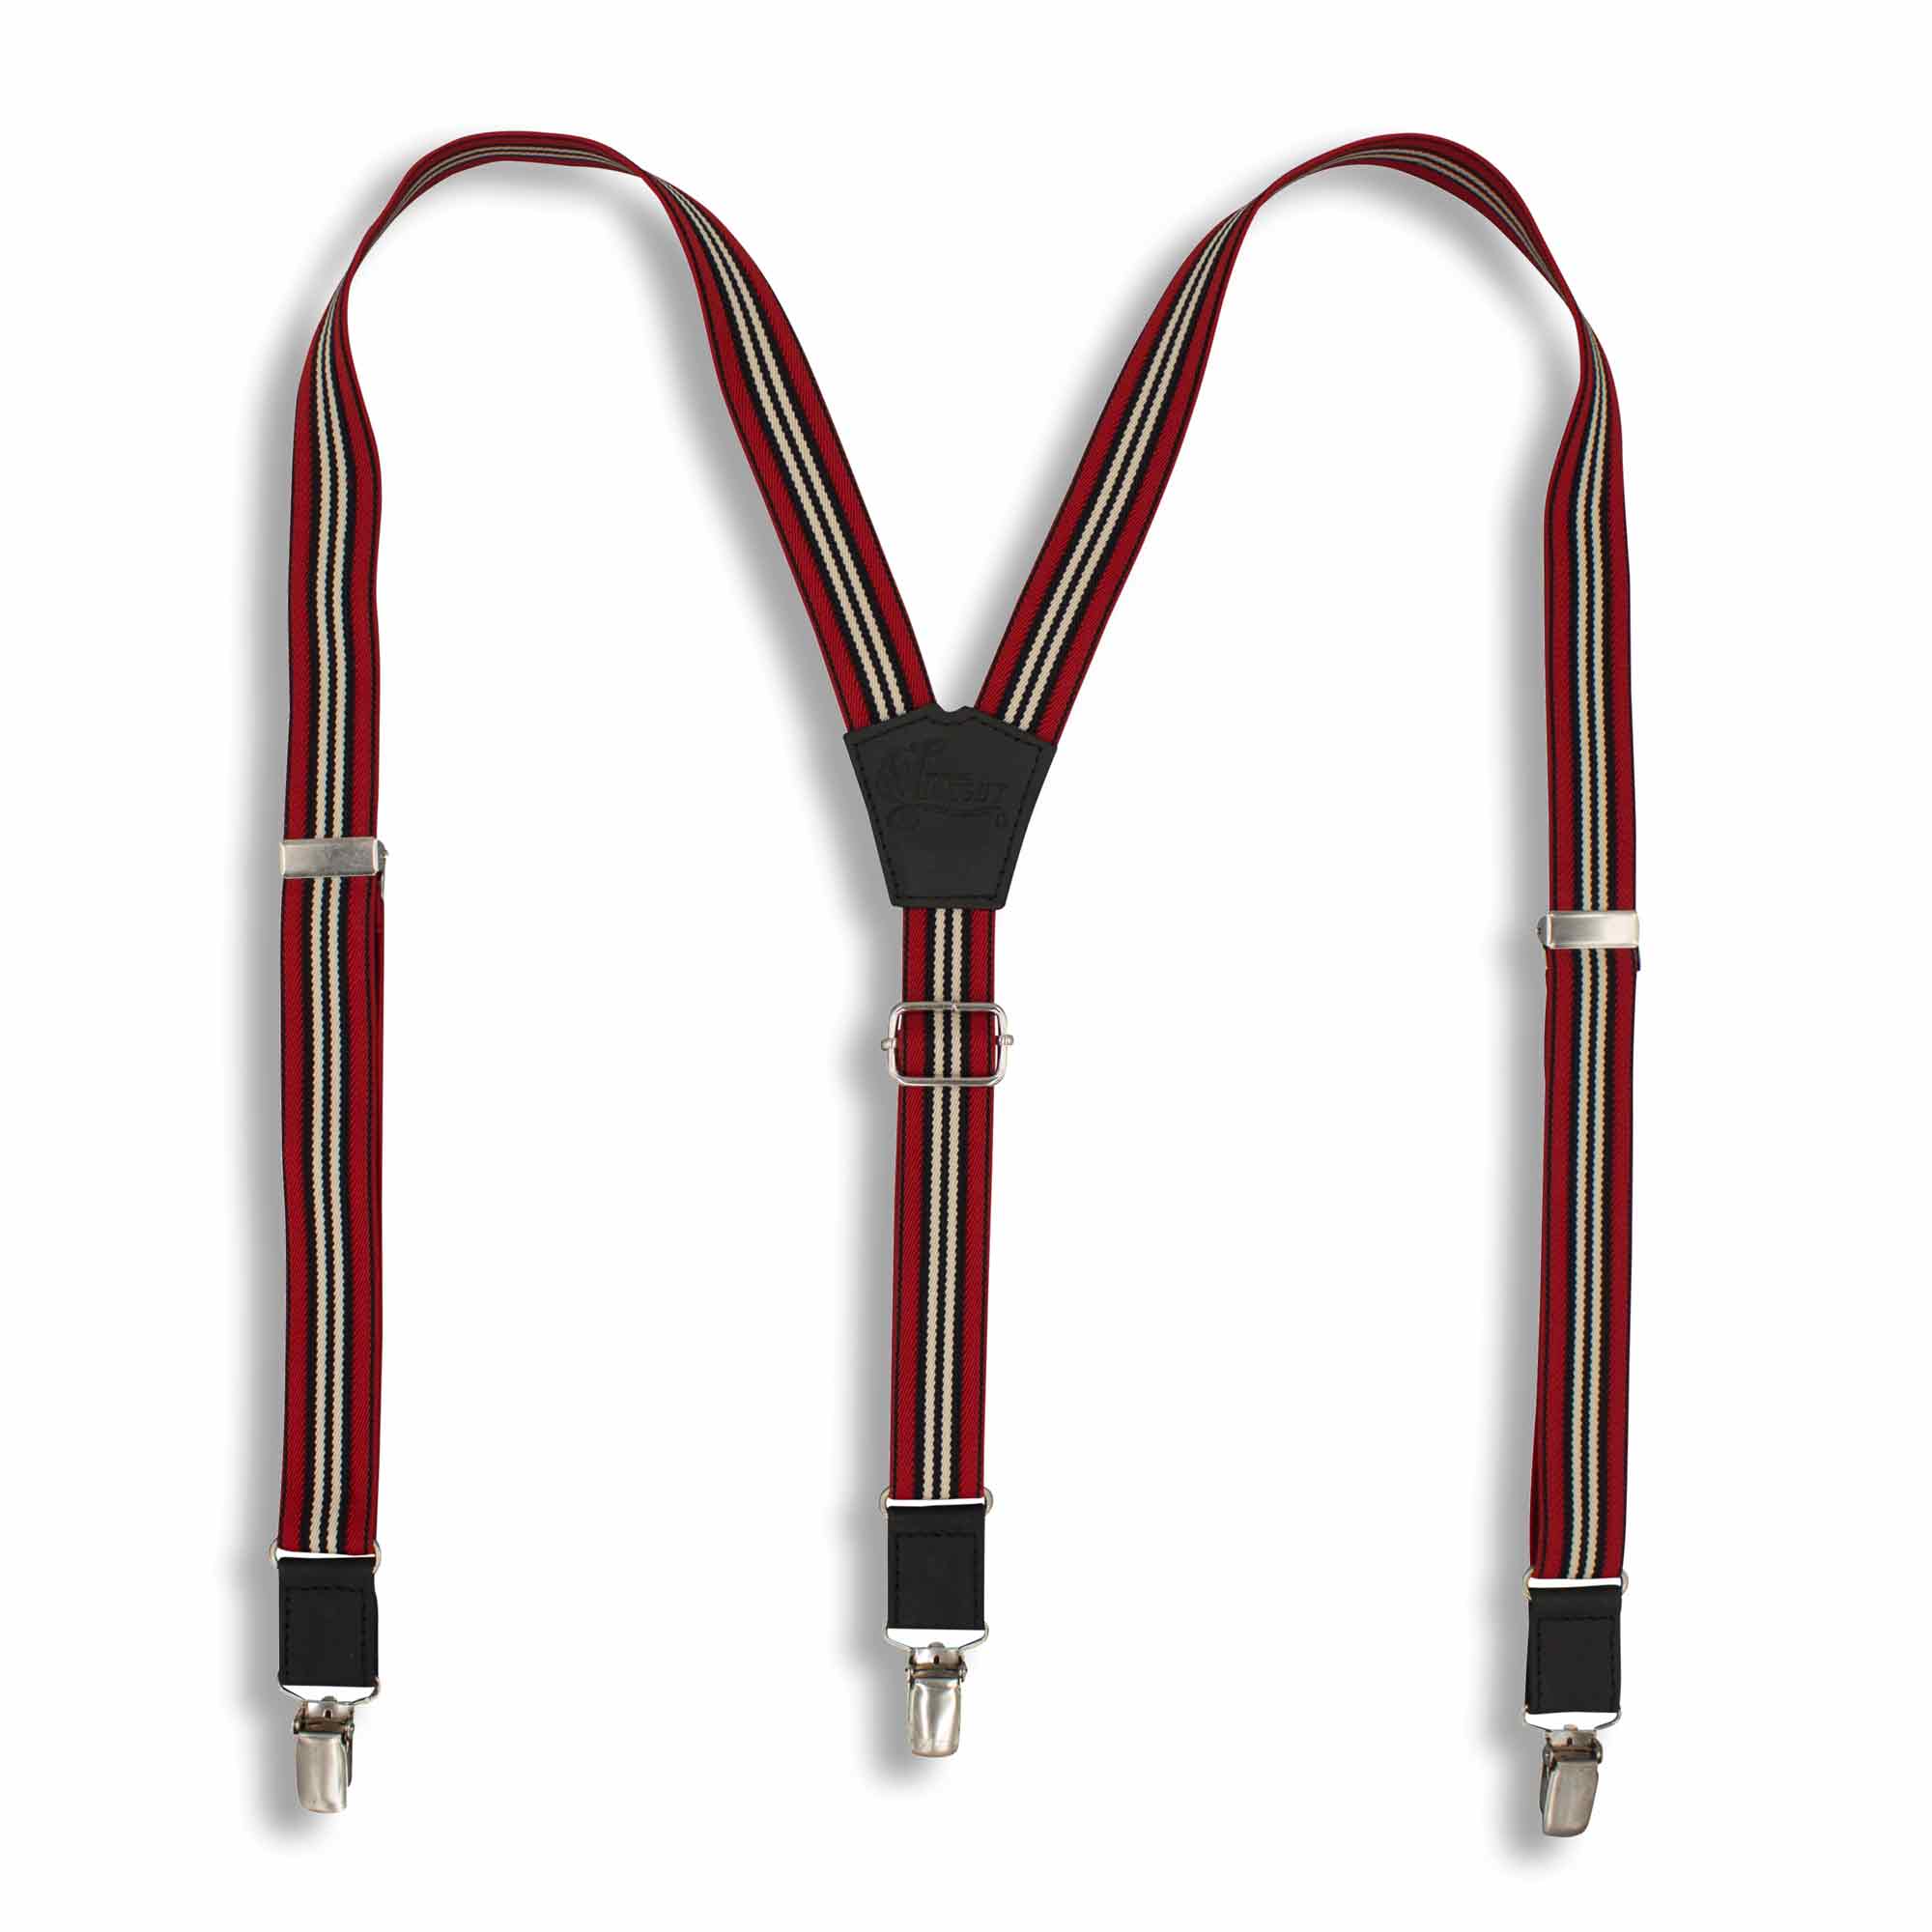 Monza Racing Suspenders slim straps (1 inch/2.54 cm) - Wiseguy Suspenders